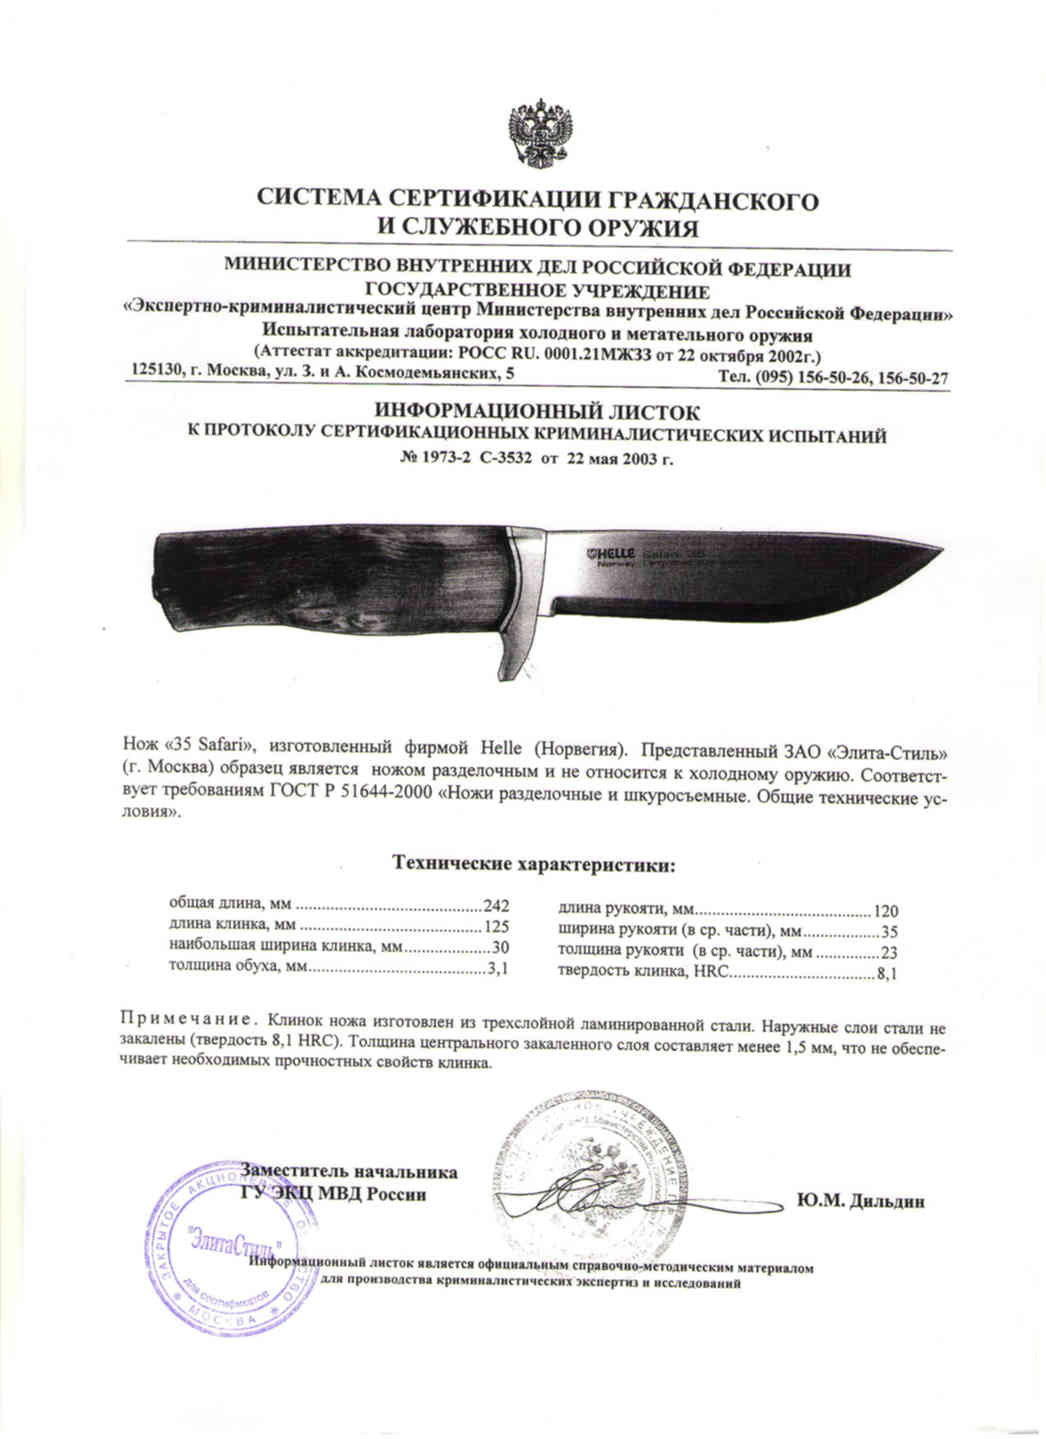 Холодное оружие длина клинка. Ножи Helle сертификат. Нож Helle Safari. Сертификат на нож Helle brakar. Нож Helle Utvaer сертификат соответствия.